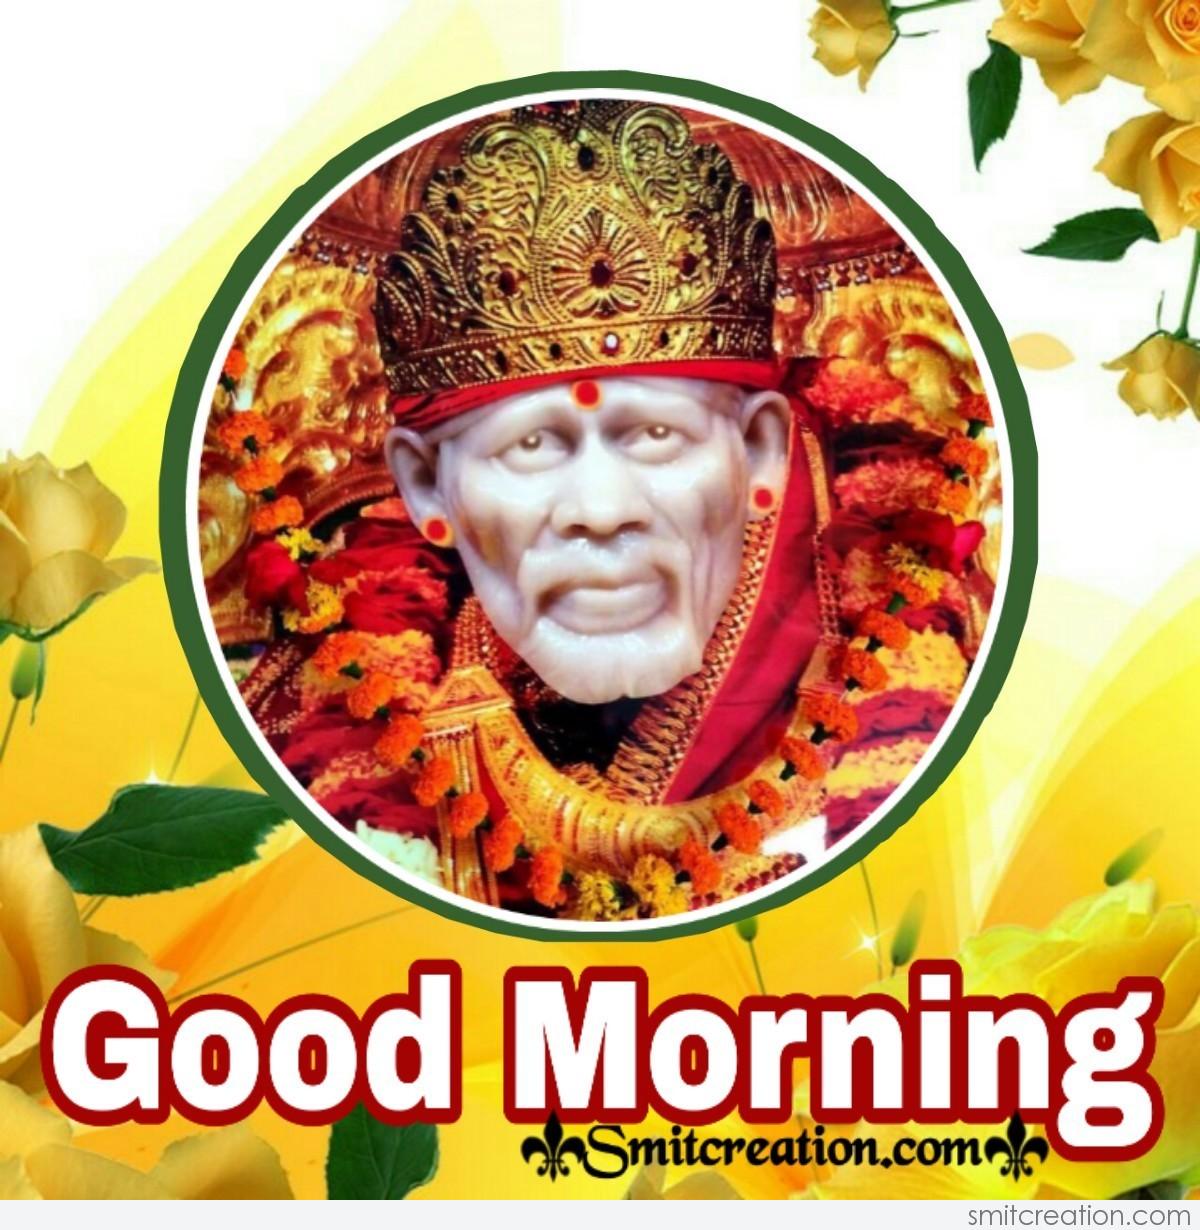 Good Morning Sai Baba Image - SmitCreation.com